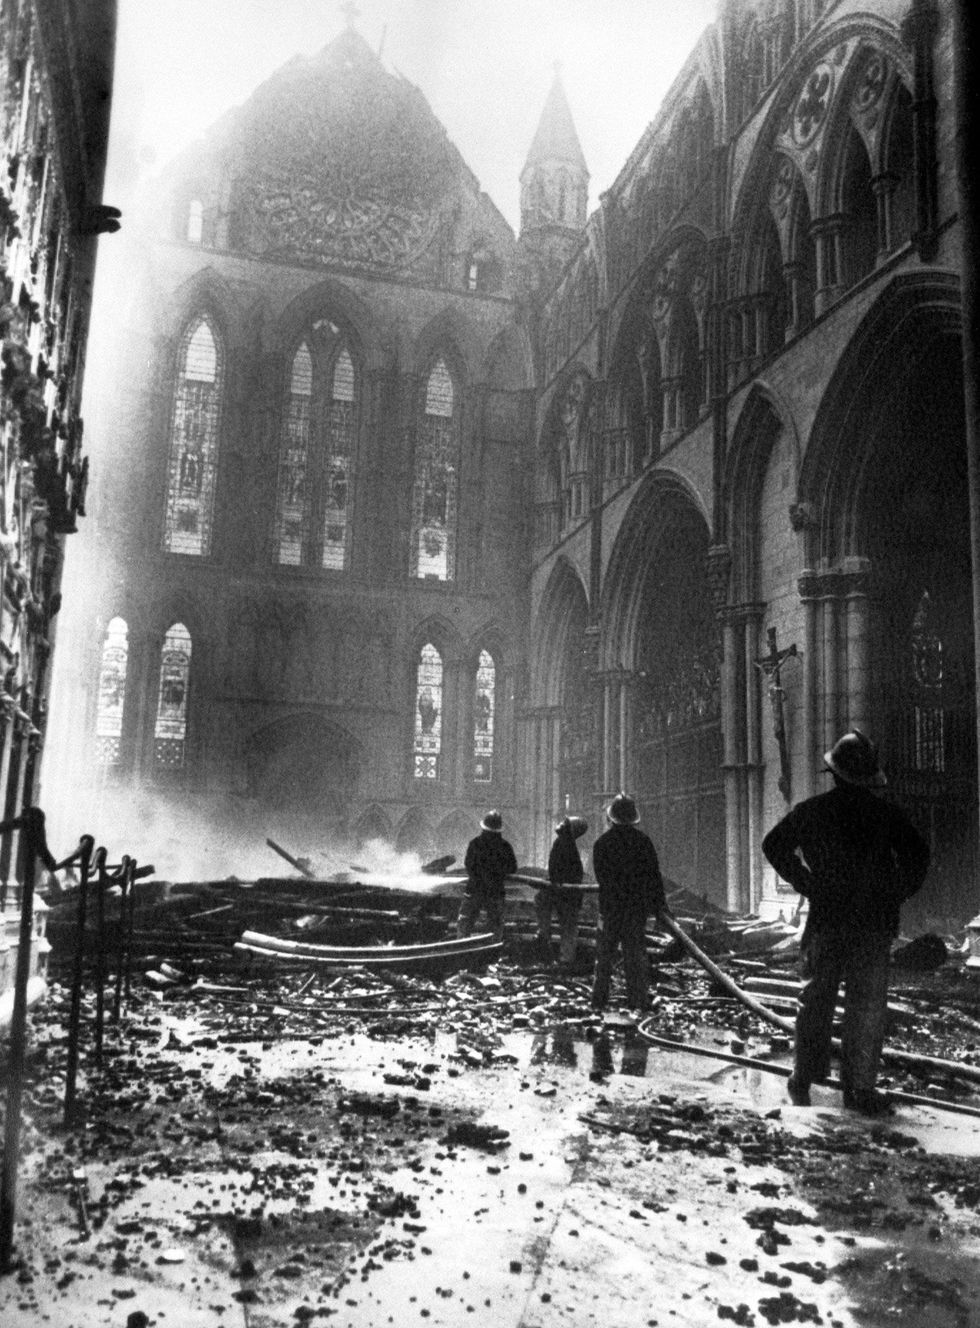 De rampzalige brand die in 1984 de kathedraal van York trof werd veroorzaakt door blikseminslag